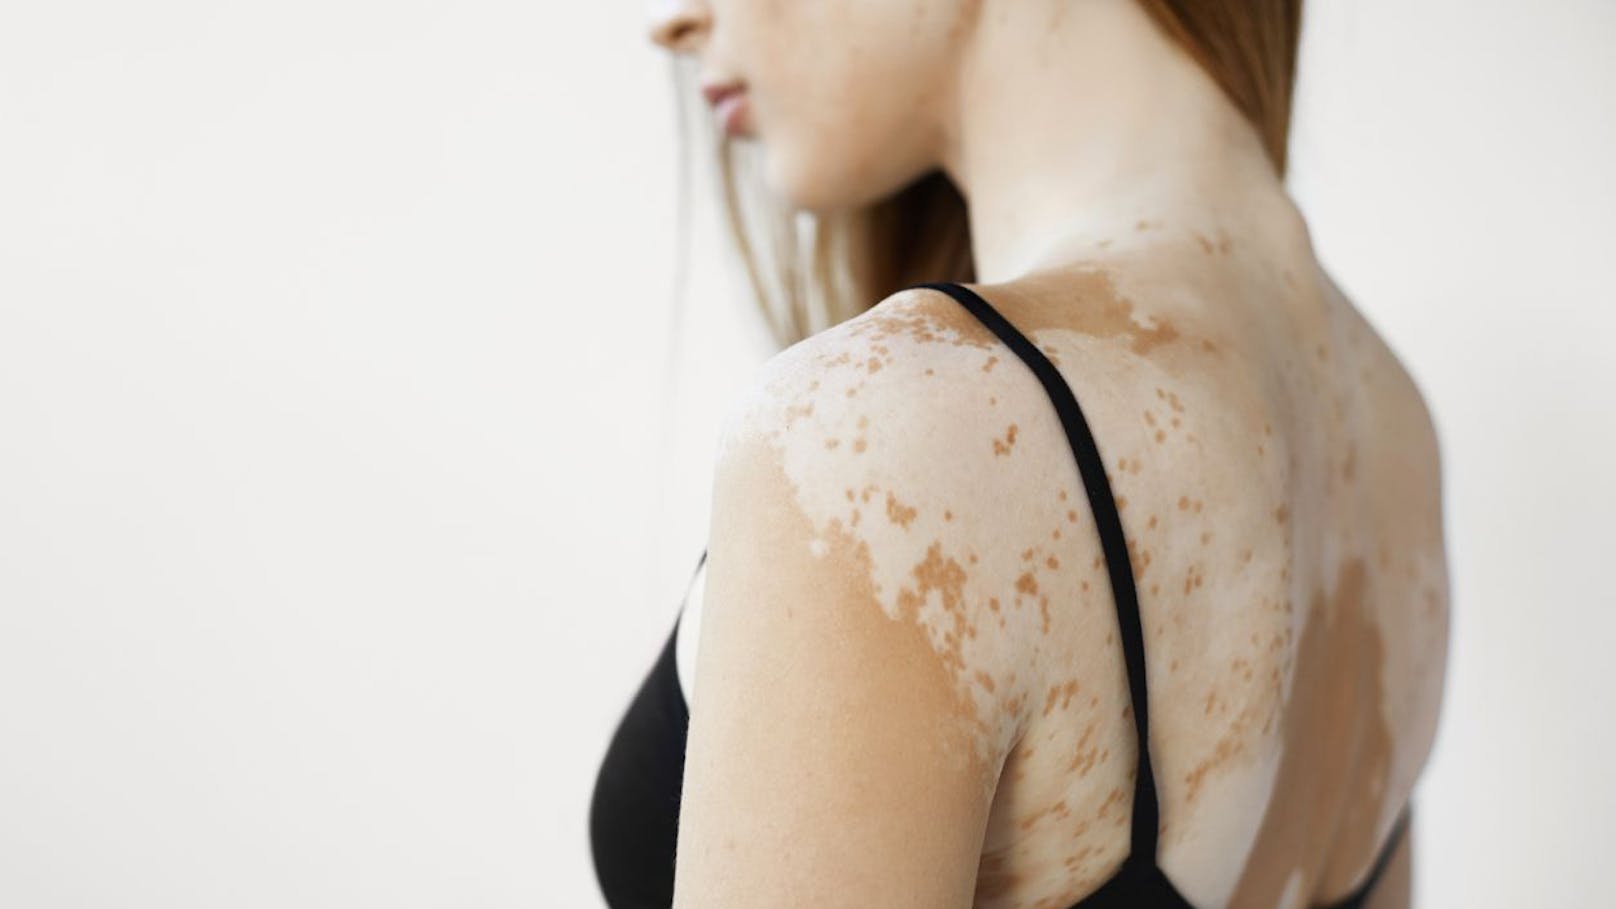 Hauterkrankung Vitiligo immer besser behandelbar